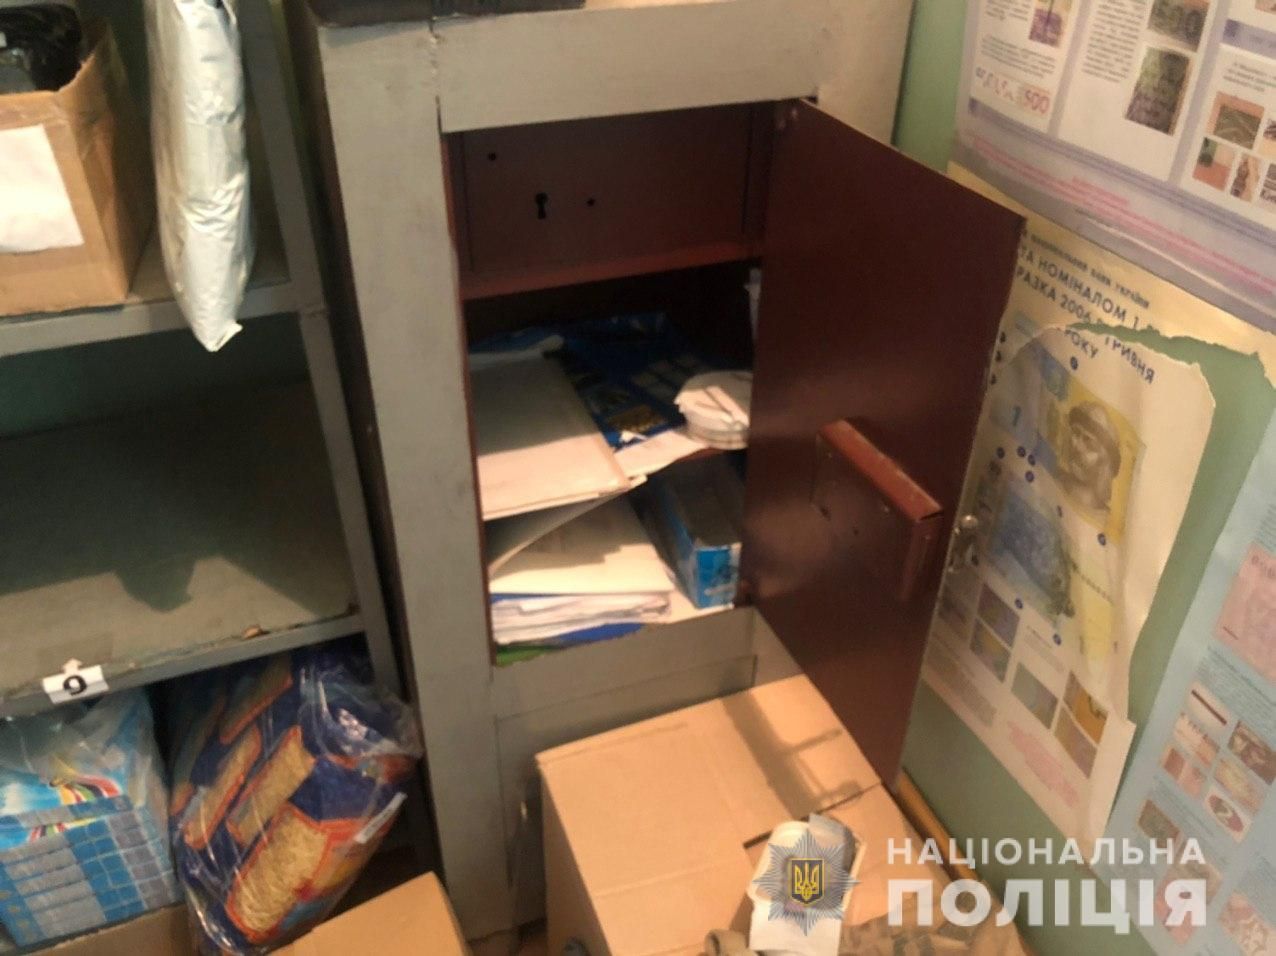 Пограбування пошти у Харкові 23 липня 2020 - фото, відео